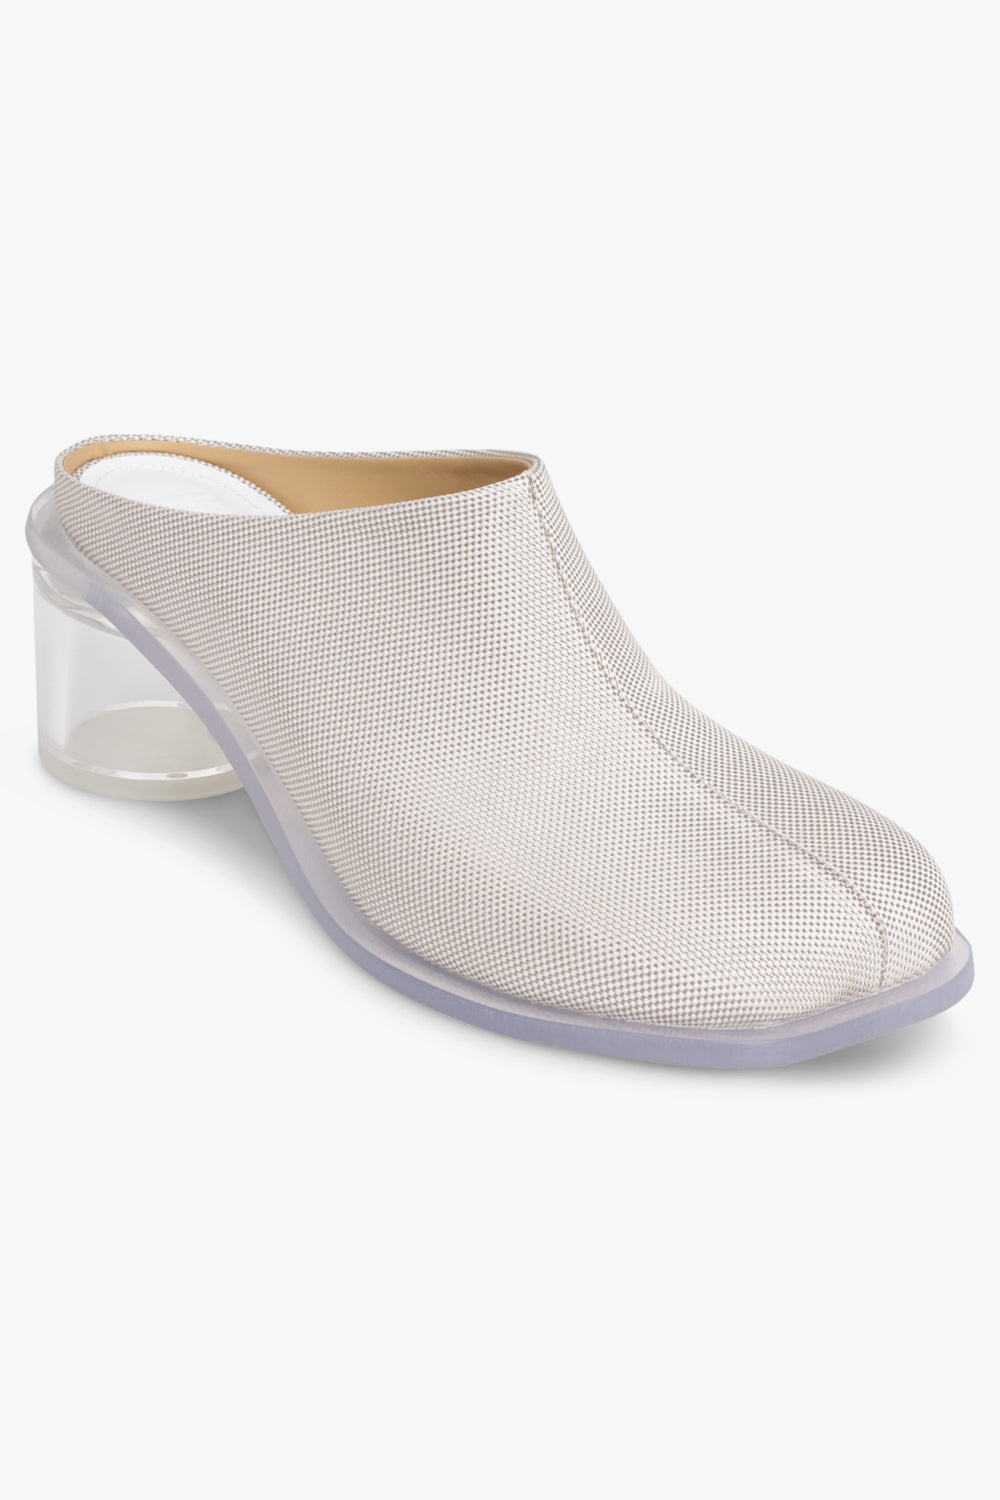 Designer Heels – Grace Melbourne